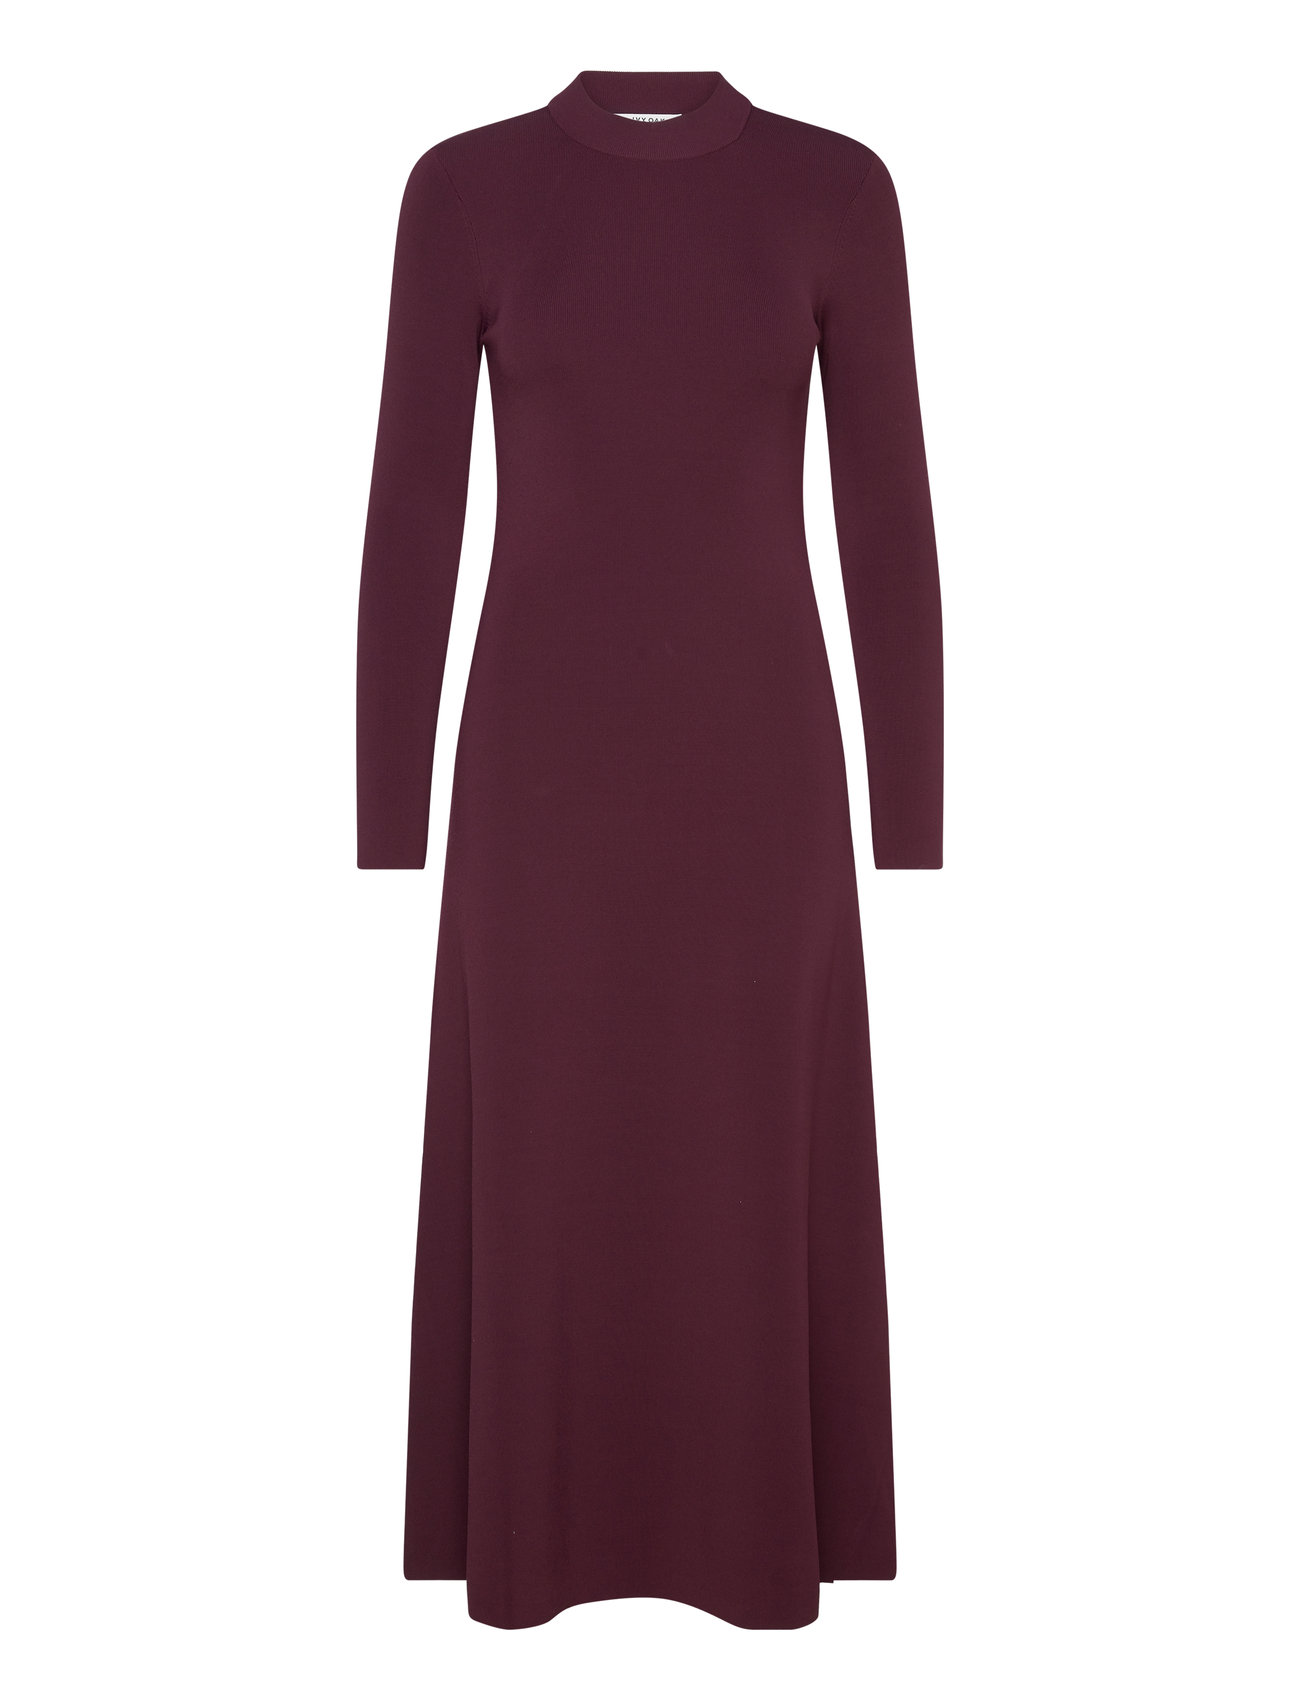 Open Back Midi Knit Dress Maxiklänning Festklänning Burgundy IVY OAK